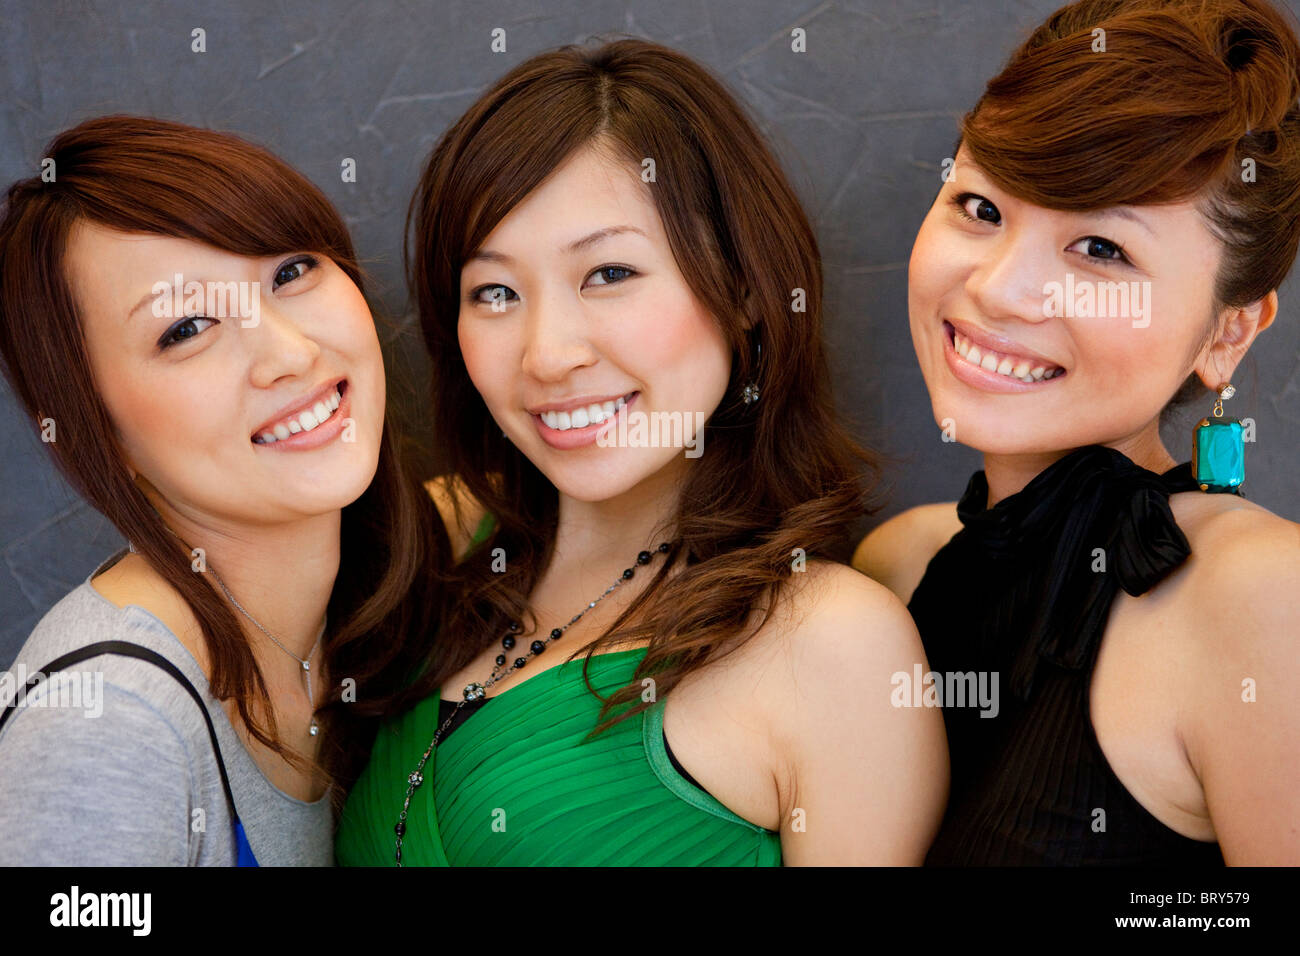 Porträt dreier junger Frauen, lächelnd und mit Blick auf die Kamera, schwarzer Hintergrund Stockfoto